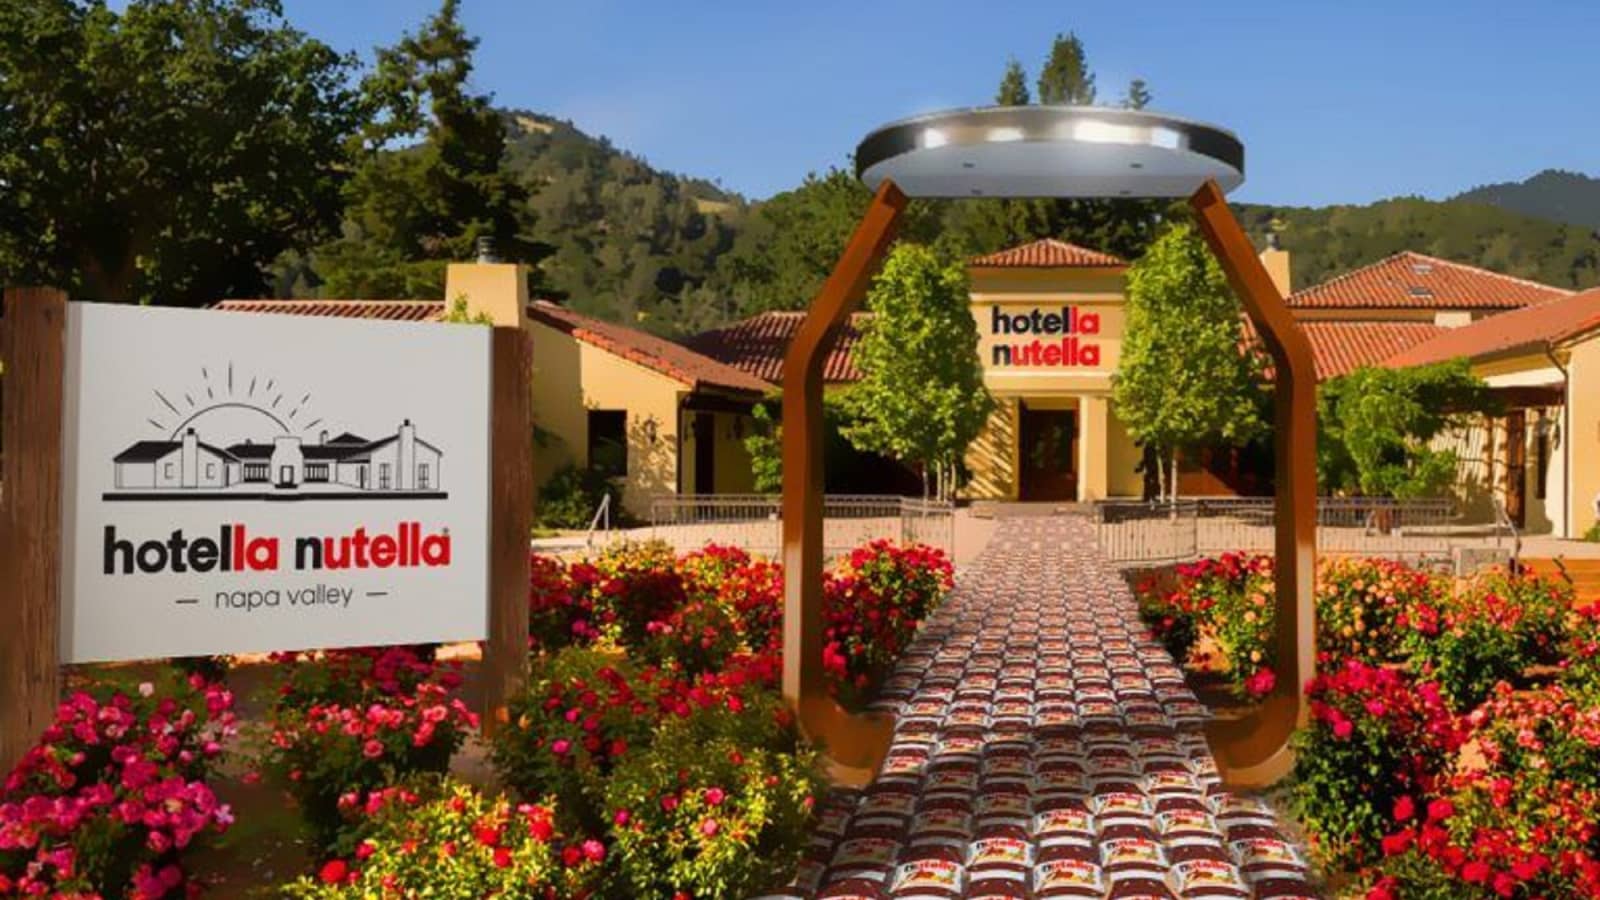 Nutella hotel in california